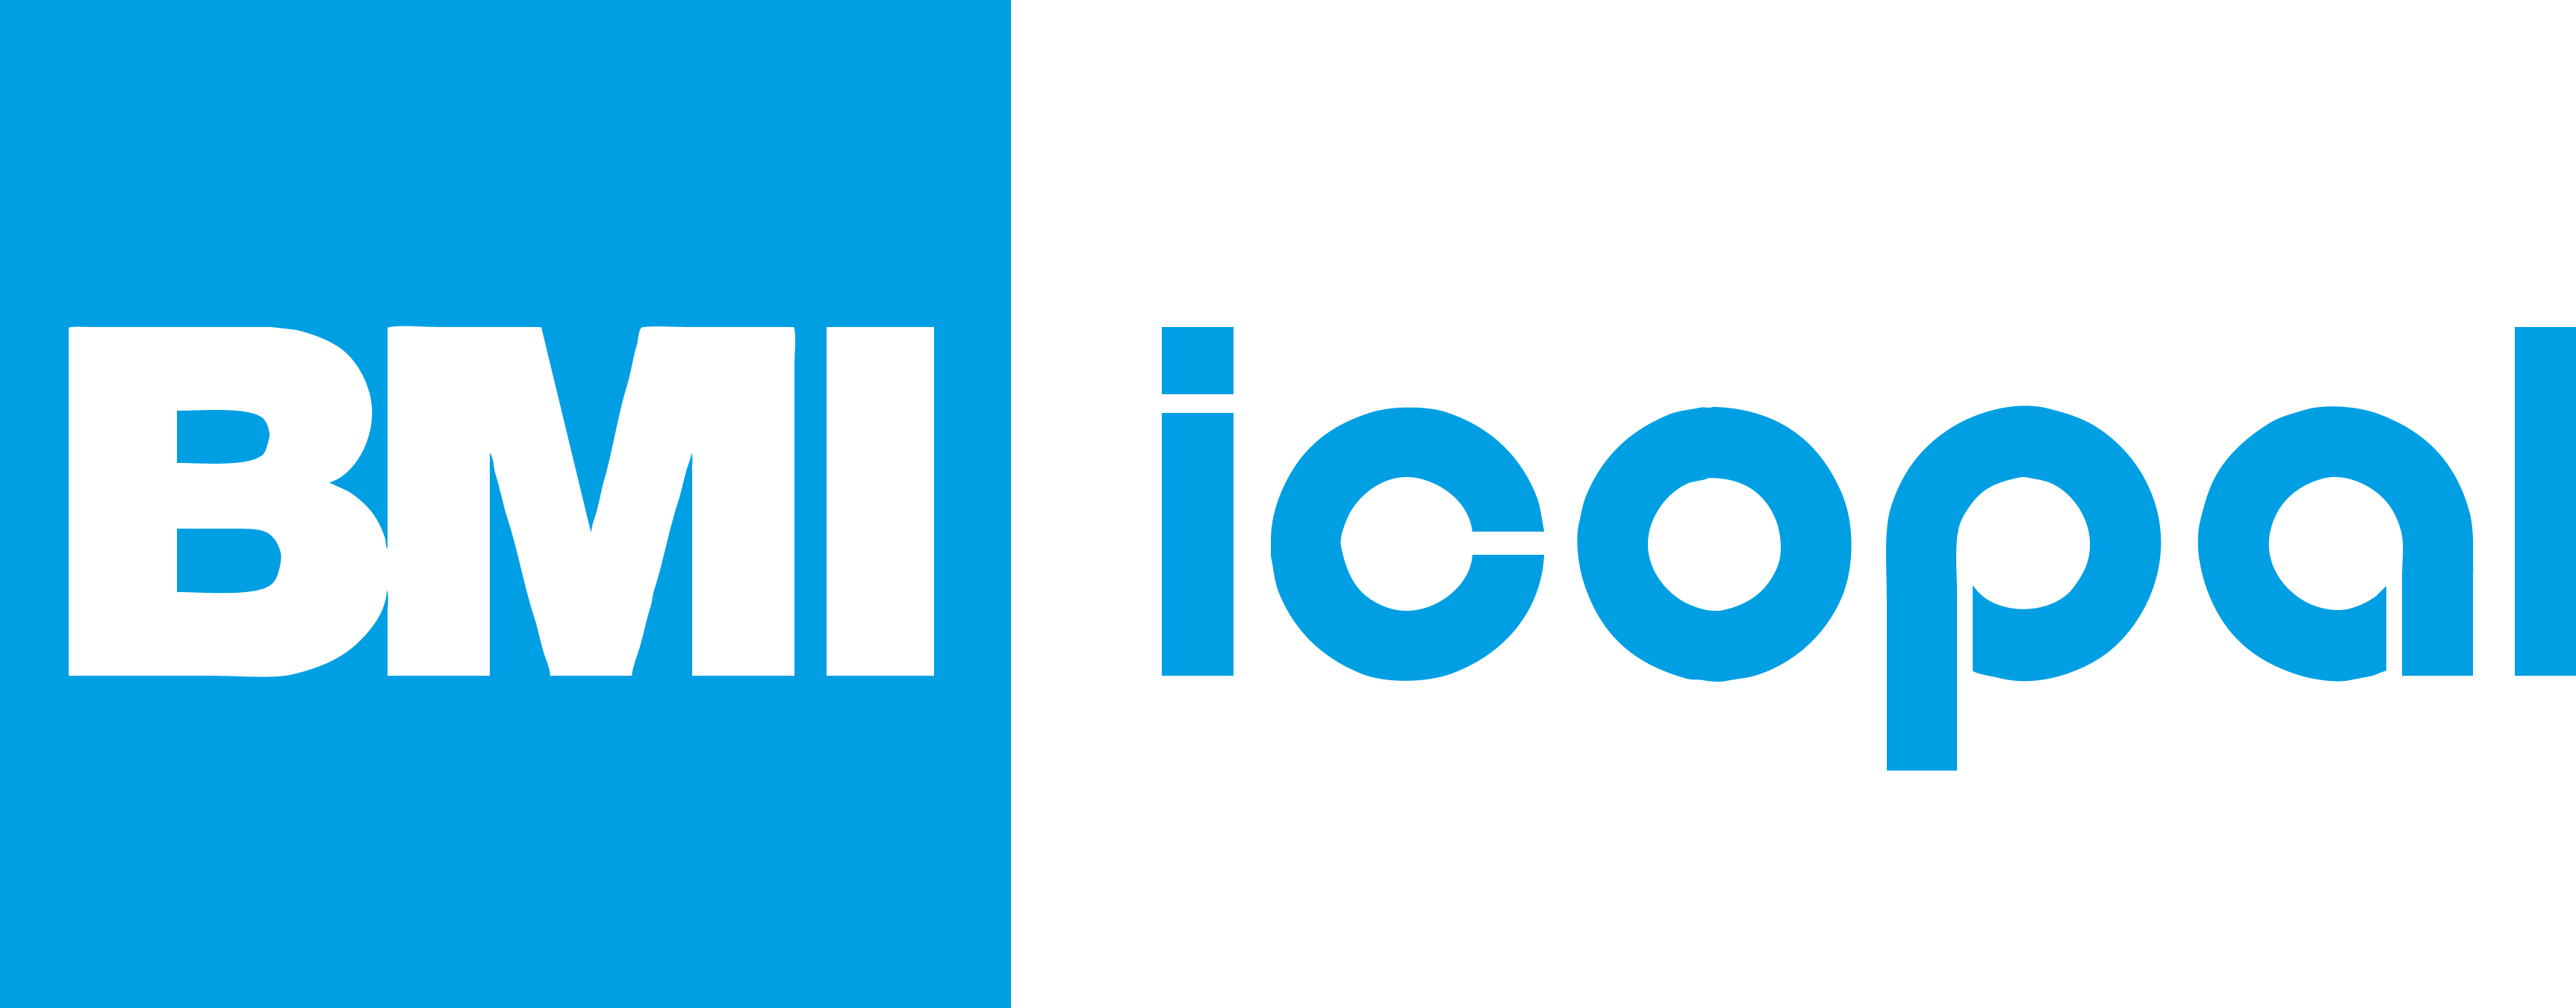 logo de la société ICOPAL